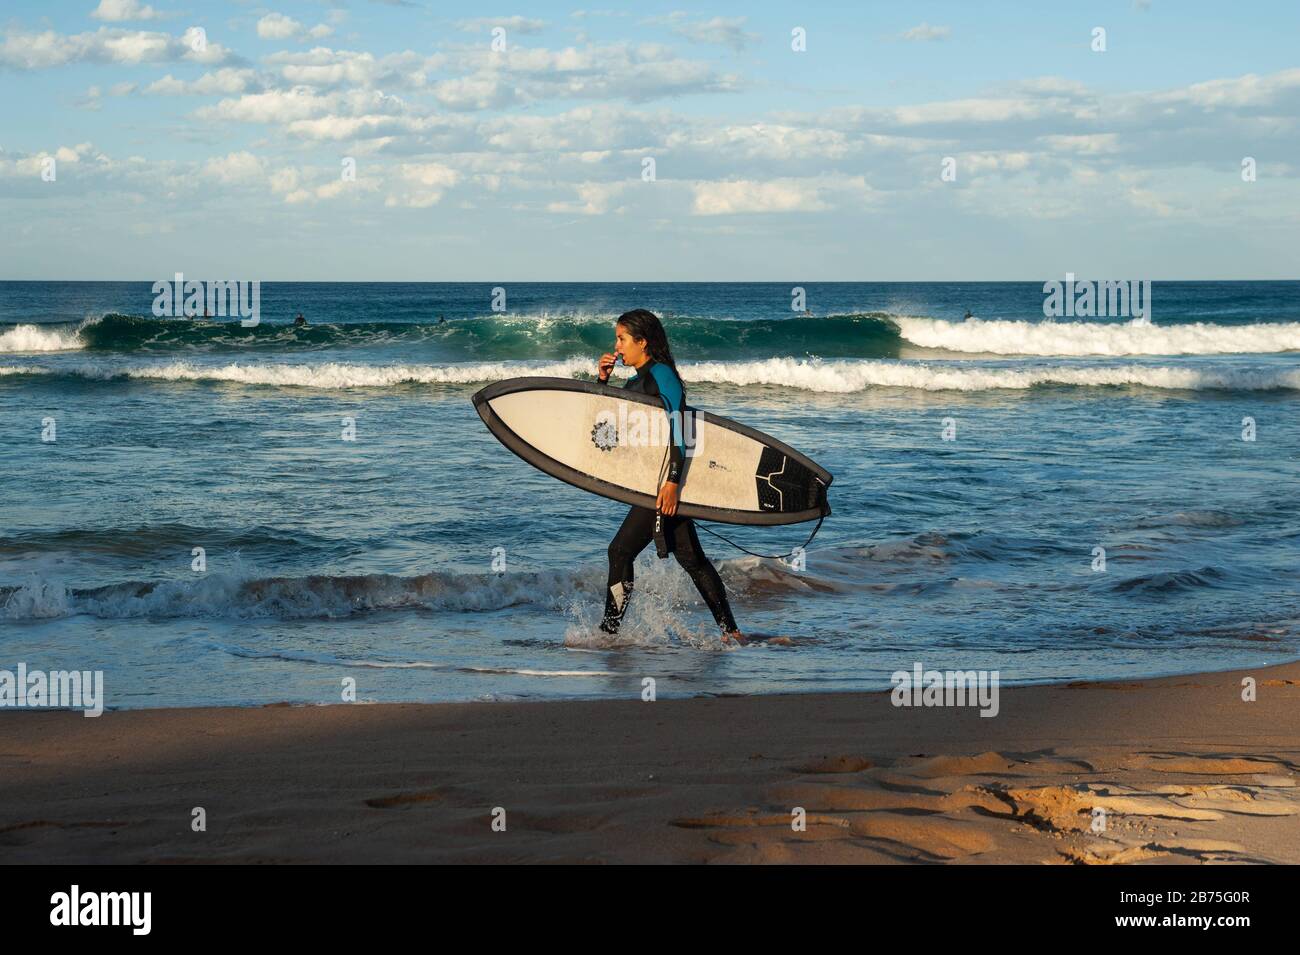 10.05.2018, Sydney, Nouvelle-Galles du Sud, Australie - une femme marche le long de Manly Beach avec son planche de surf sous son bras, tandis que d'autres surfeurs attendent en arrière-plan la bonne vague. [traduction automatique] Banque D'Images